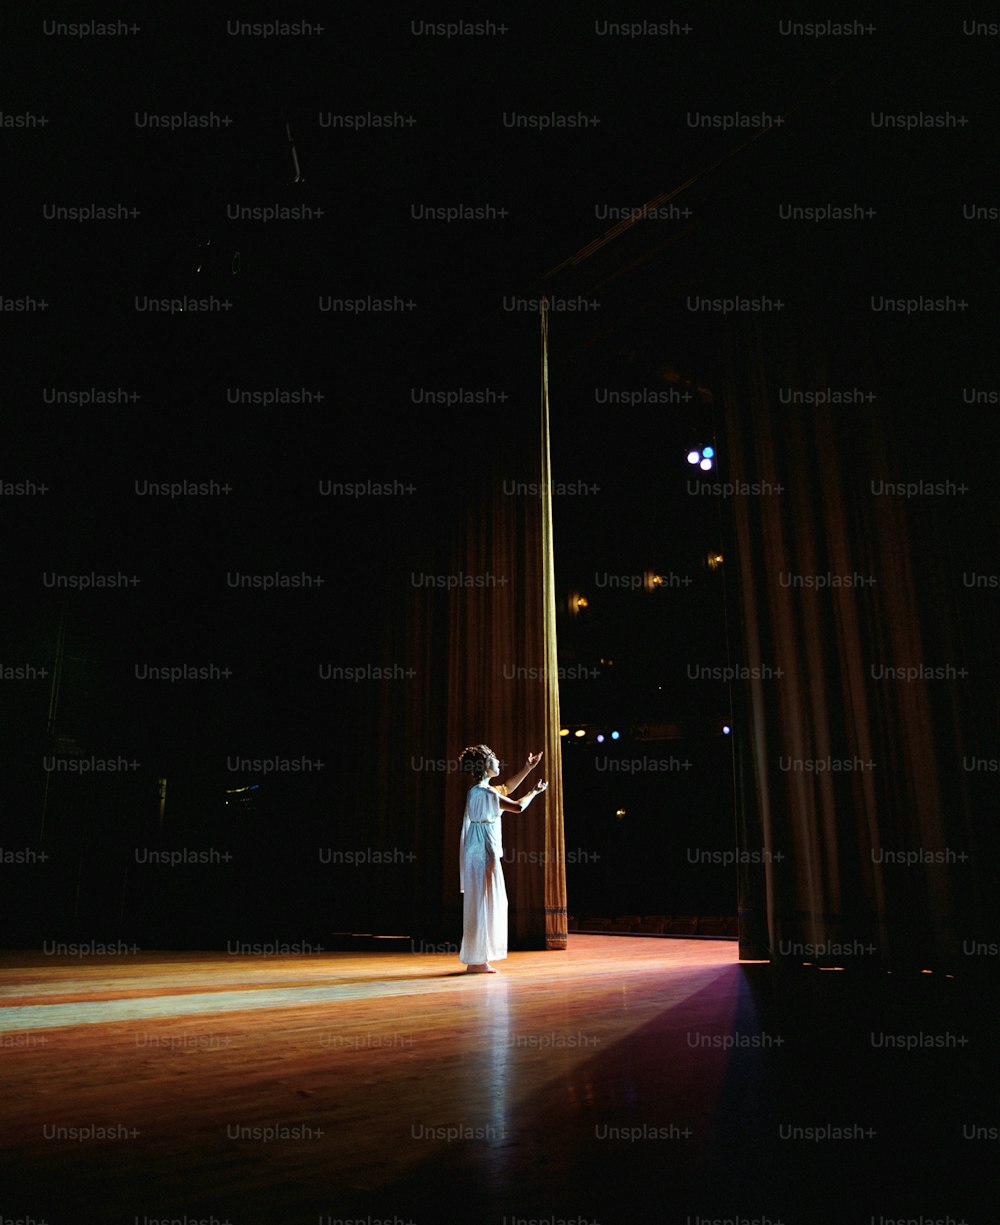 하얀 드레스를 입고 무대에 서 있는 여자